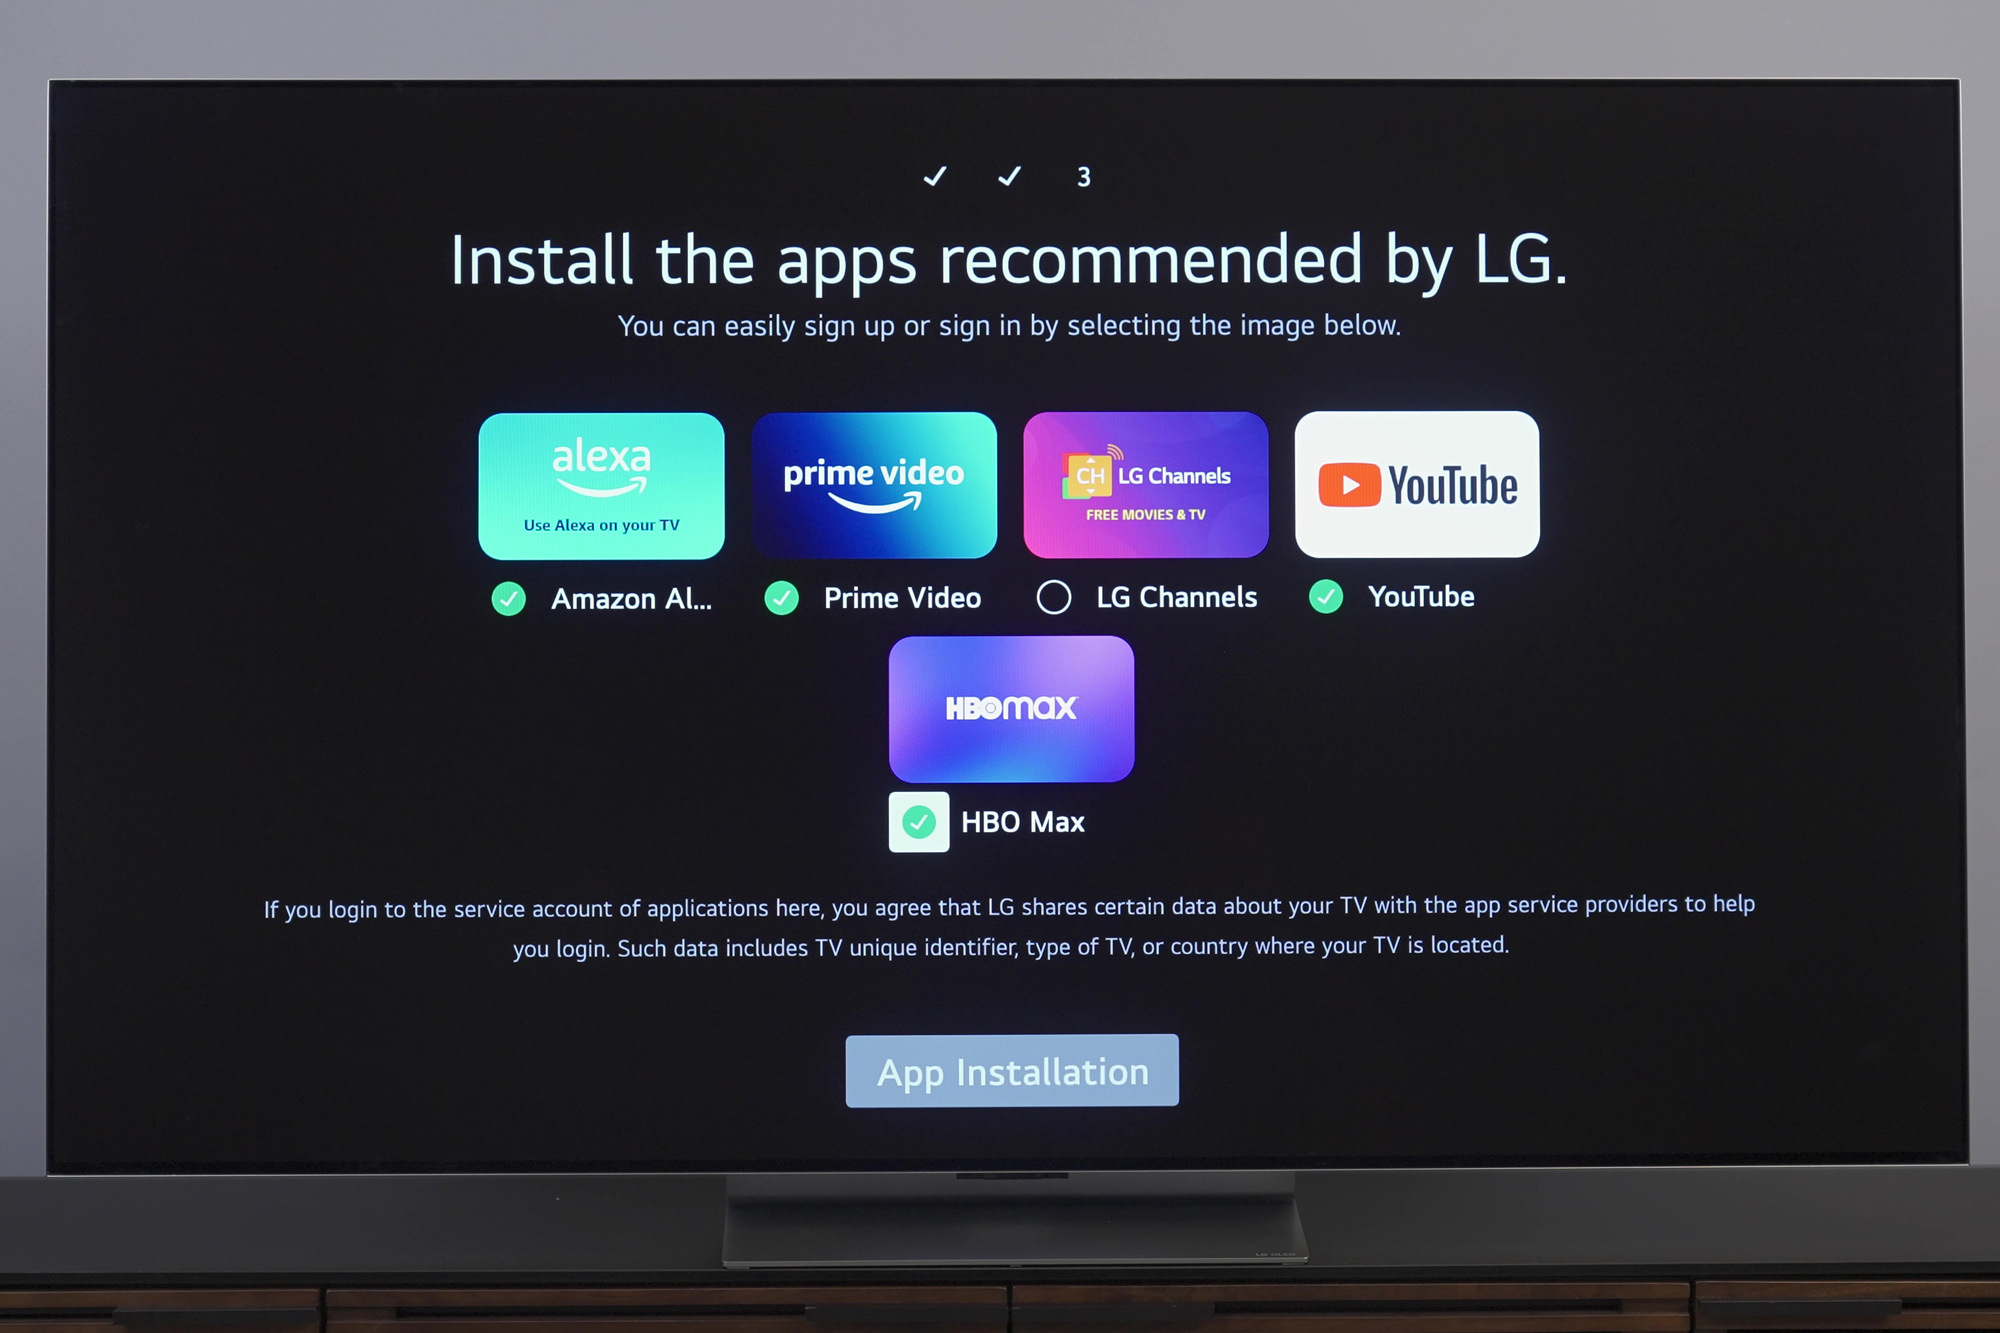 LG G3 OLED Review (OLED55G3PUA, OLED65G3PUA, OLED77G3PUA